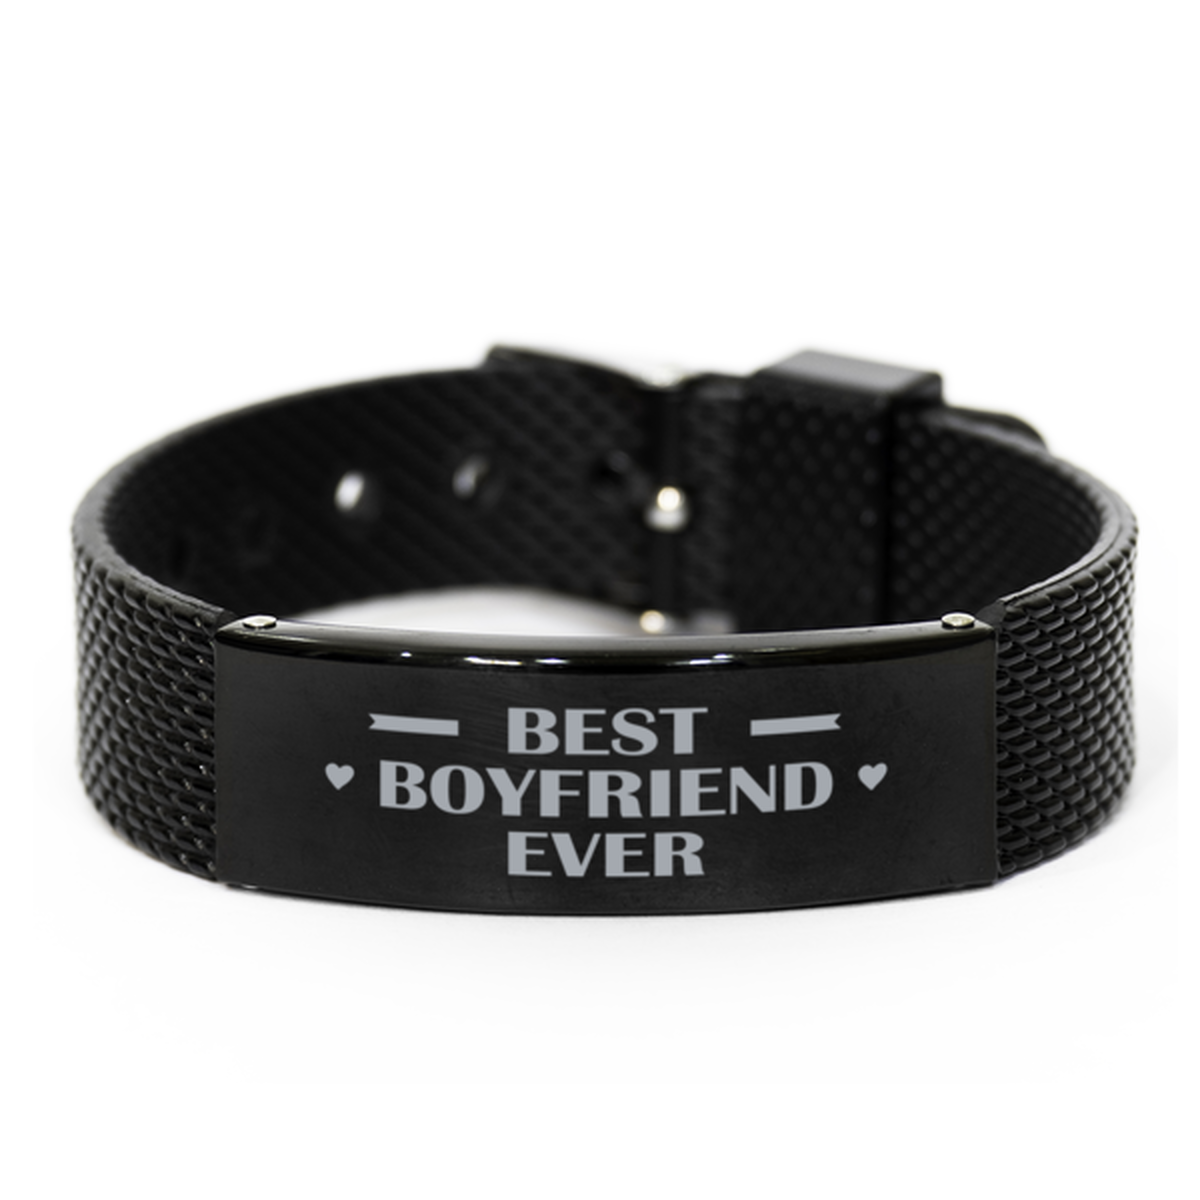 Best Boyfriend Ever Boyfriend Gifts, Gag Engraved Bracelet For Boyfriend, Best Family Gifts For Men